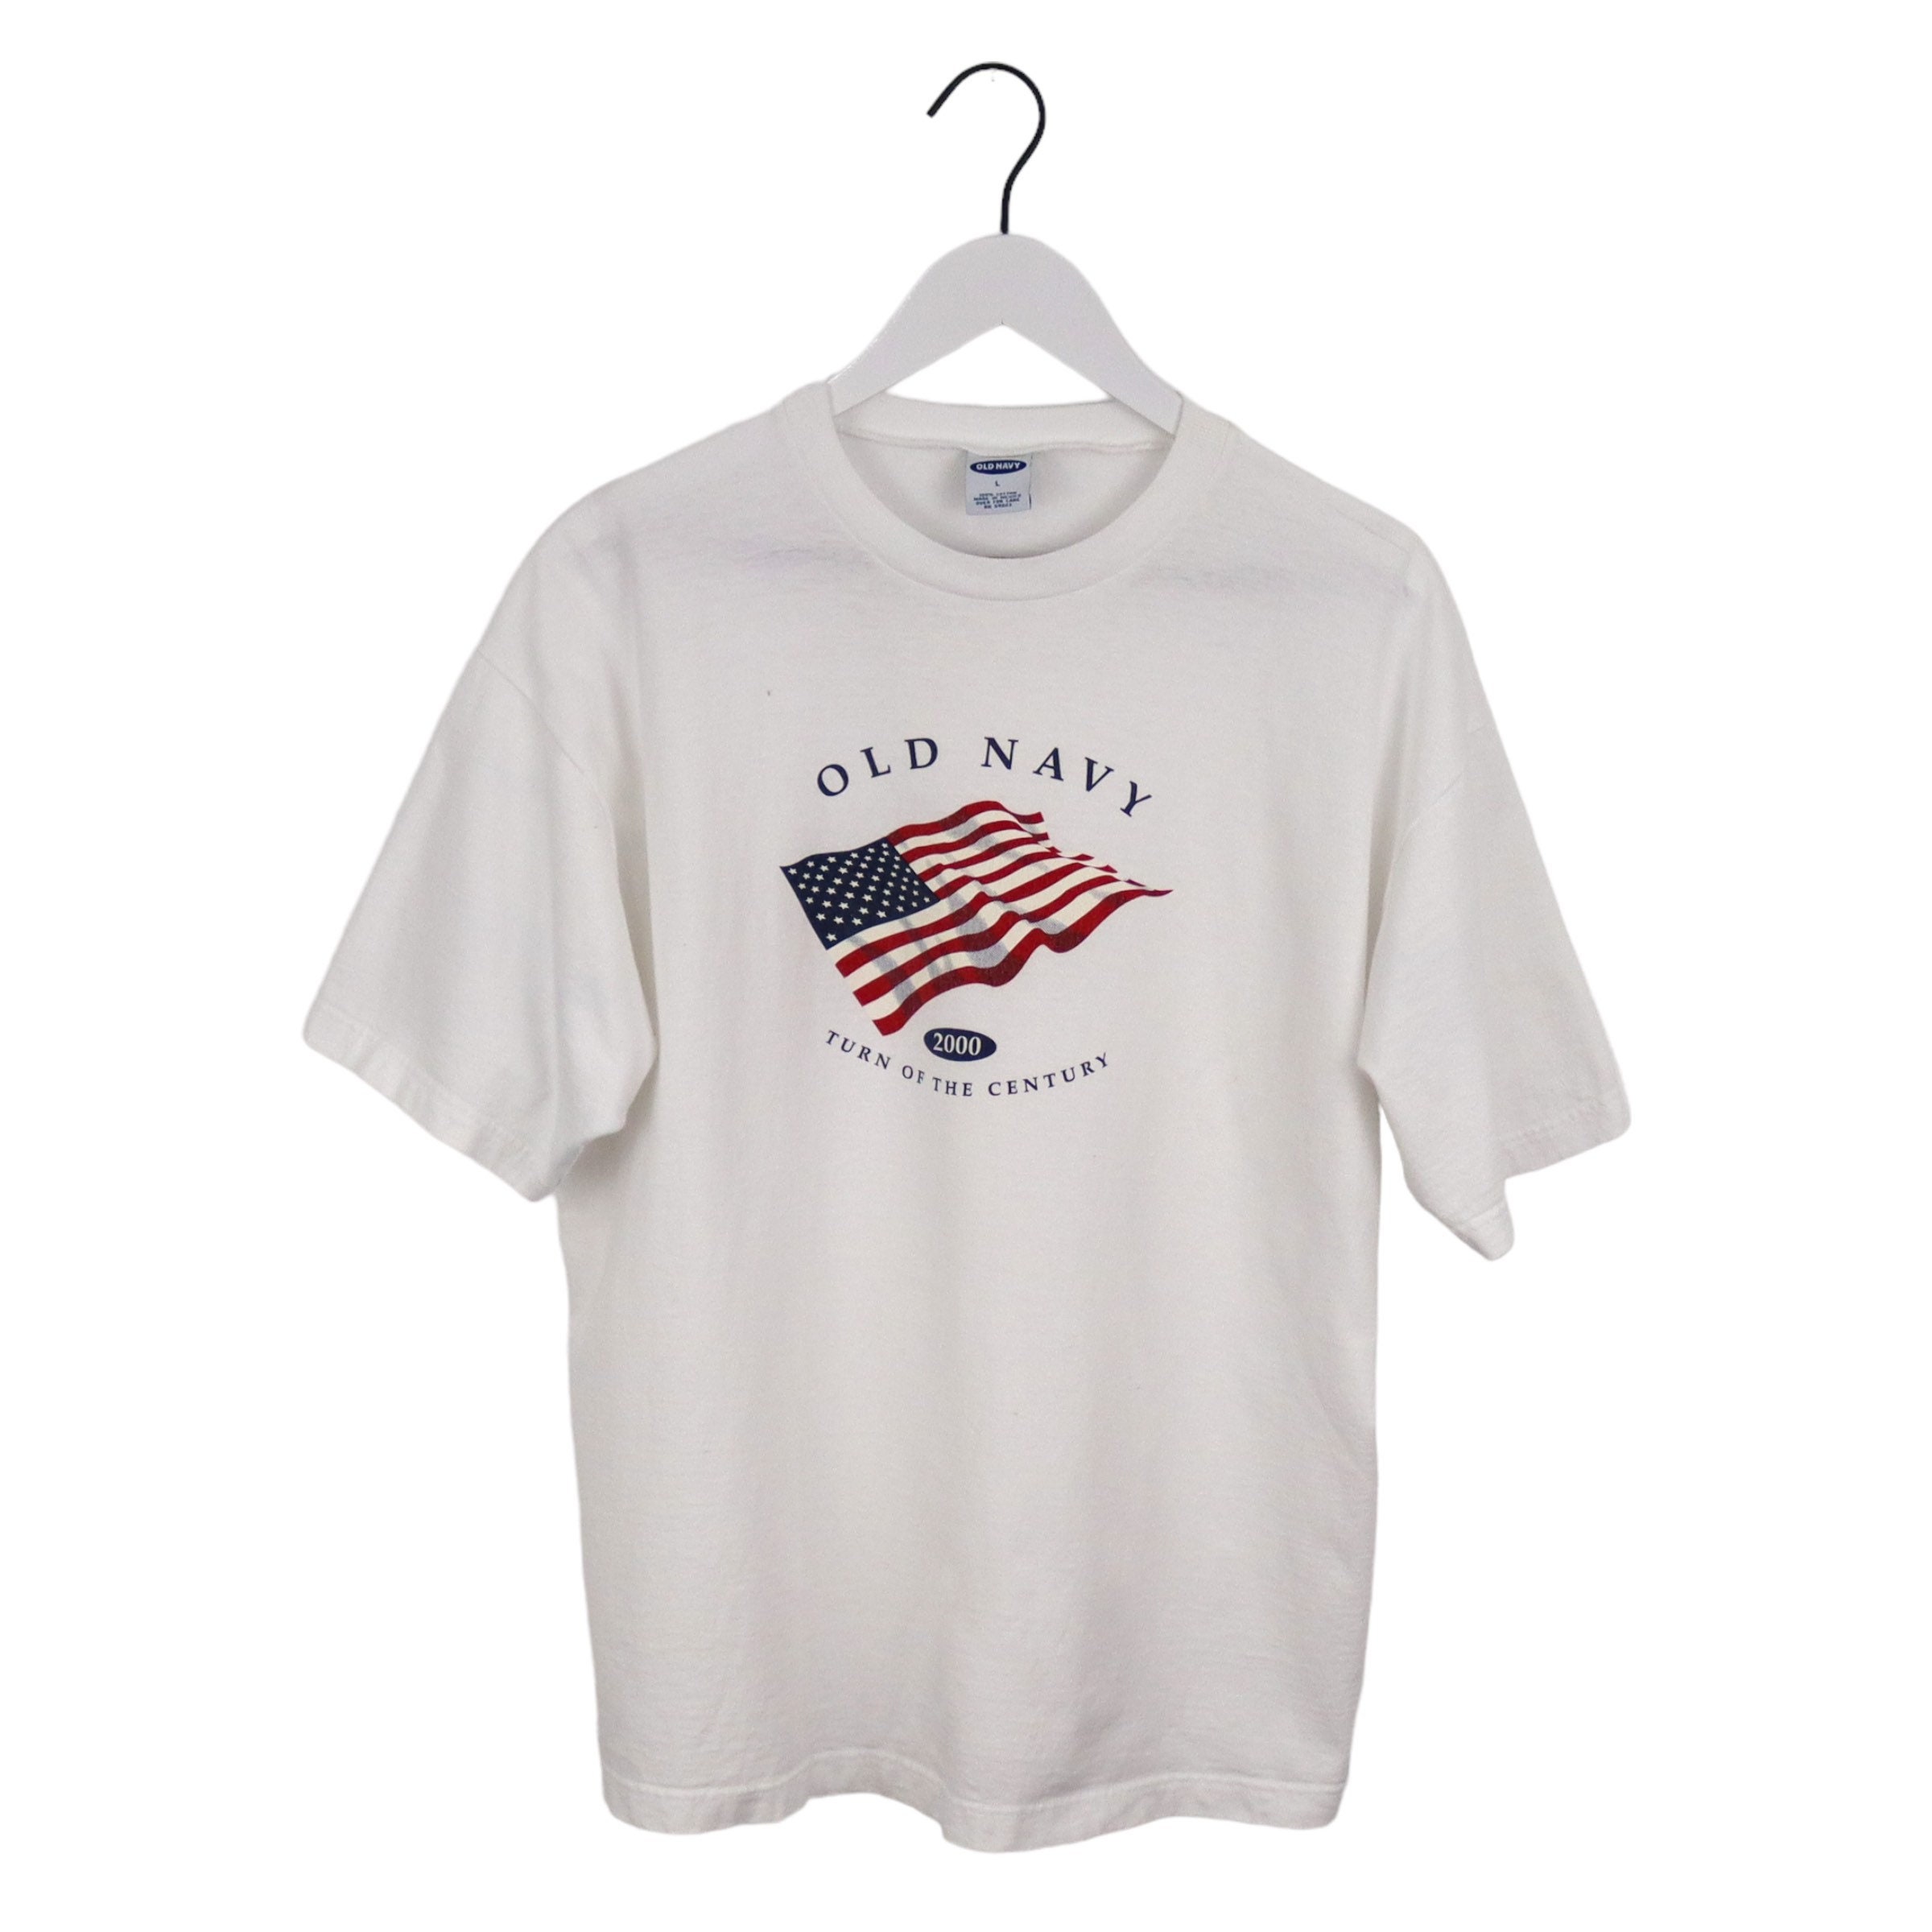 Vintage Old Navy T-shirt 2000 American Flag USA Crewneck Tee 